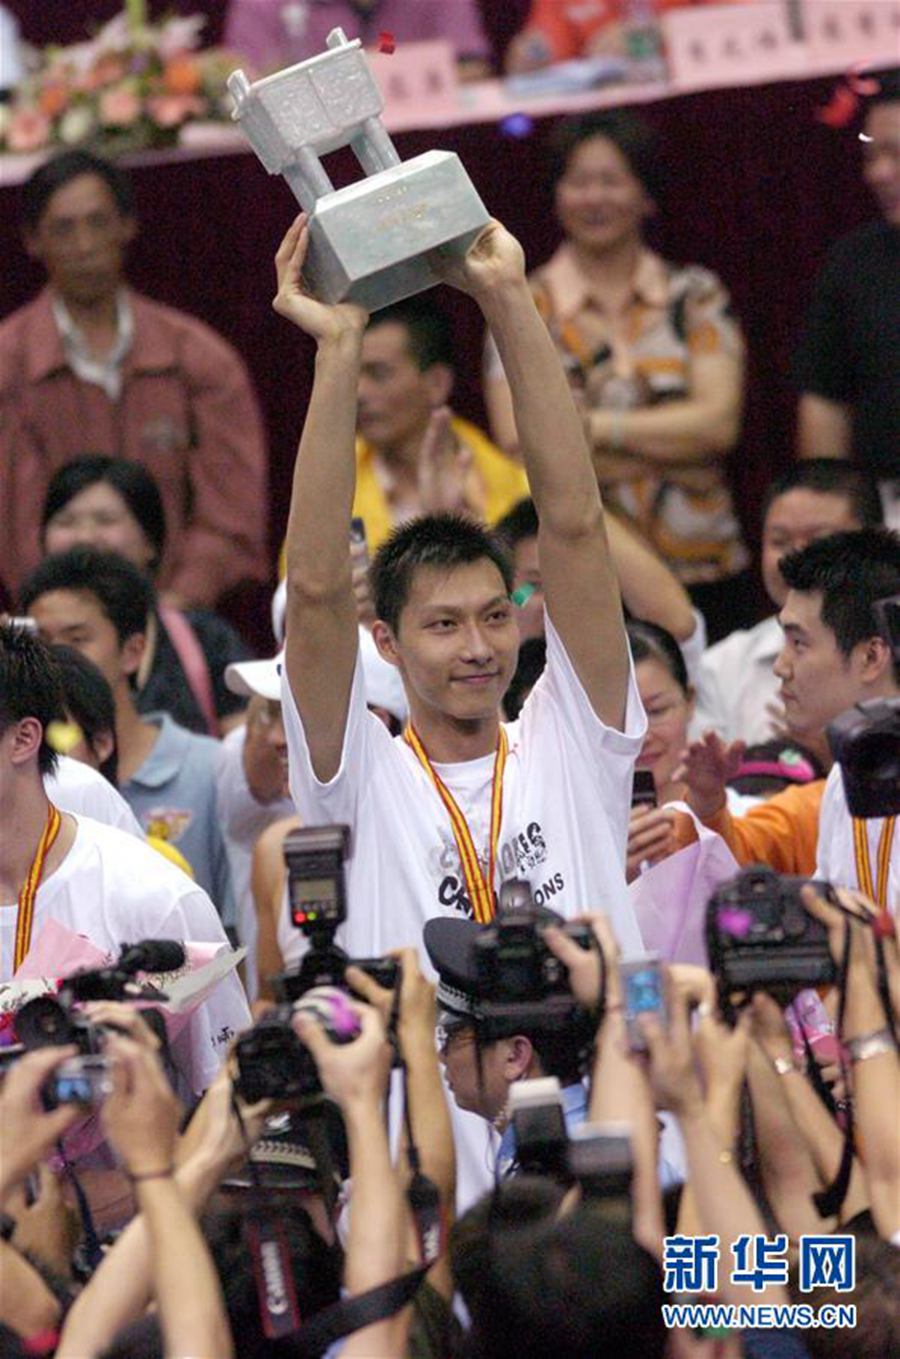 2006년 4월 19일 2005~2006 시즌CBA 결승 5차전에서 광둥바오마스(寶瑪仕)팀이 홈그라운드에서 바이솽루(八一雙鹿)팀을 88:81로 꺾고 우승했다. 광둥바오마스팀의 이젠롄(易建聯·가운데) 선수가 트로피를 들어 보이고 있다. [사진 출처: 신화망]